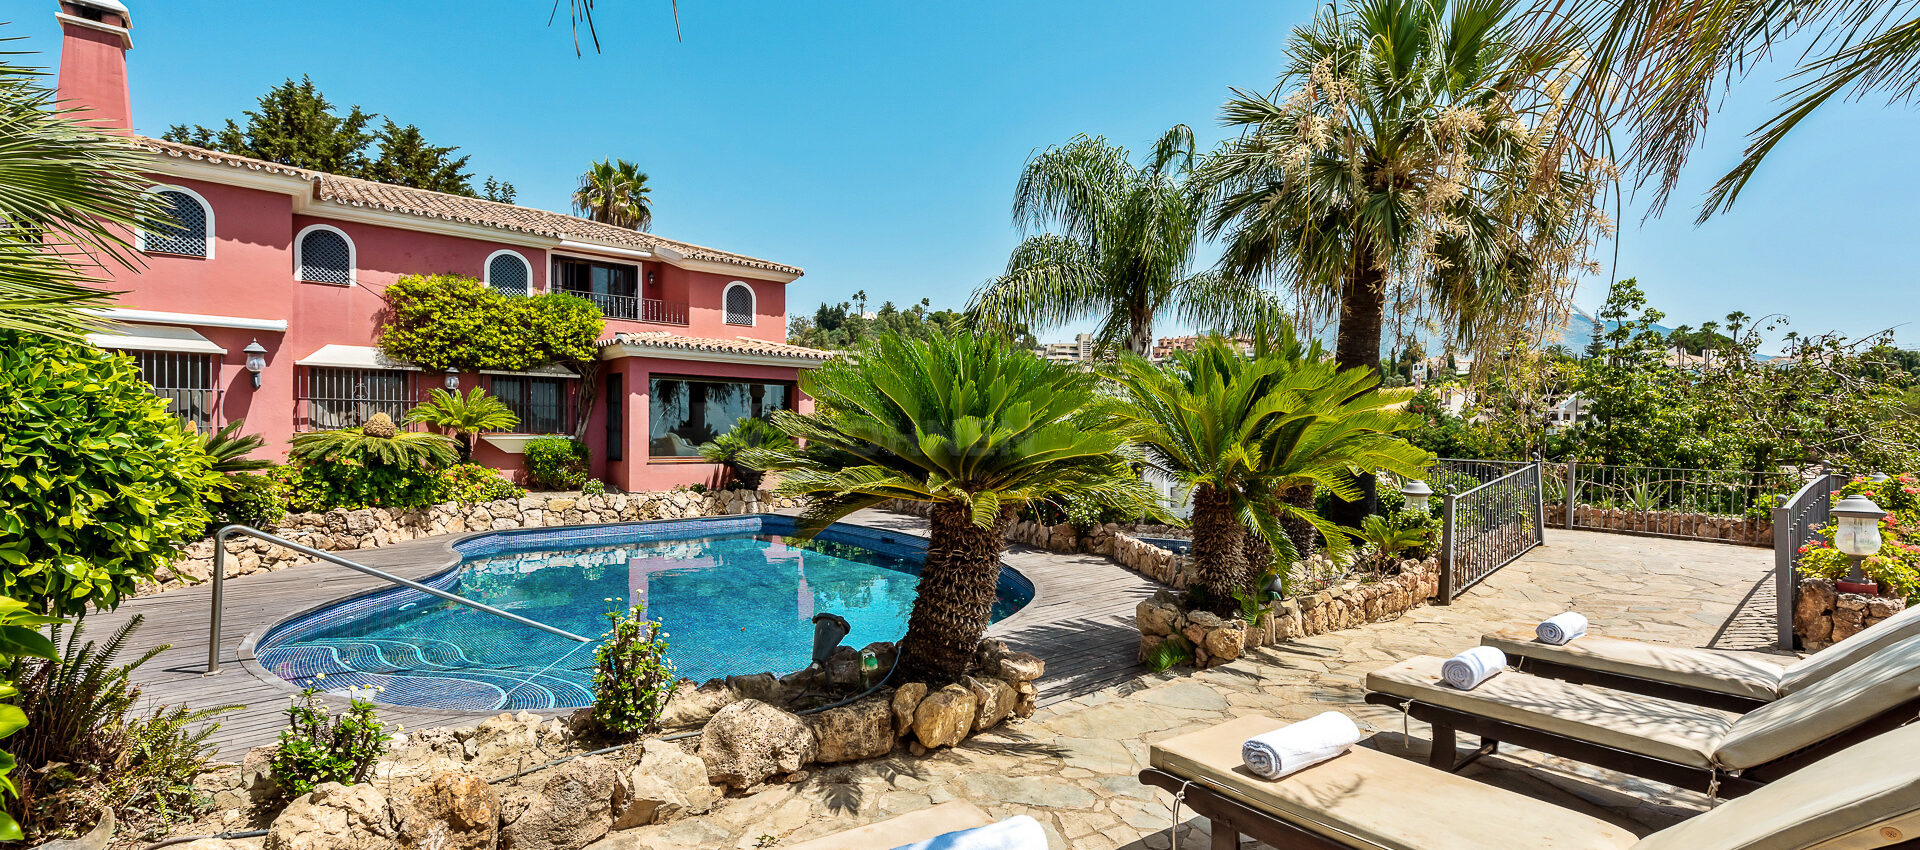 Preciosa villa situada junto a los campos de golf más prestigiosos de Marbella